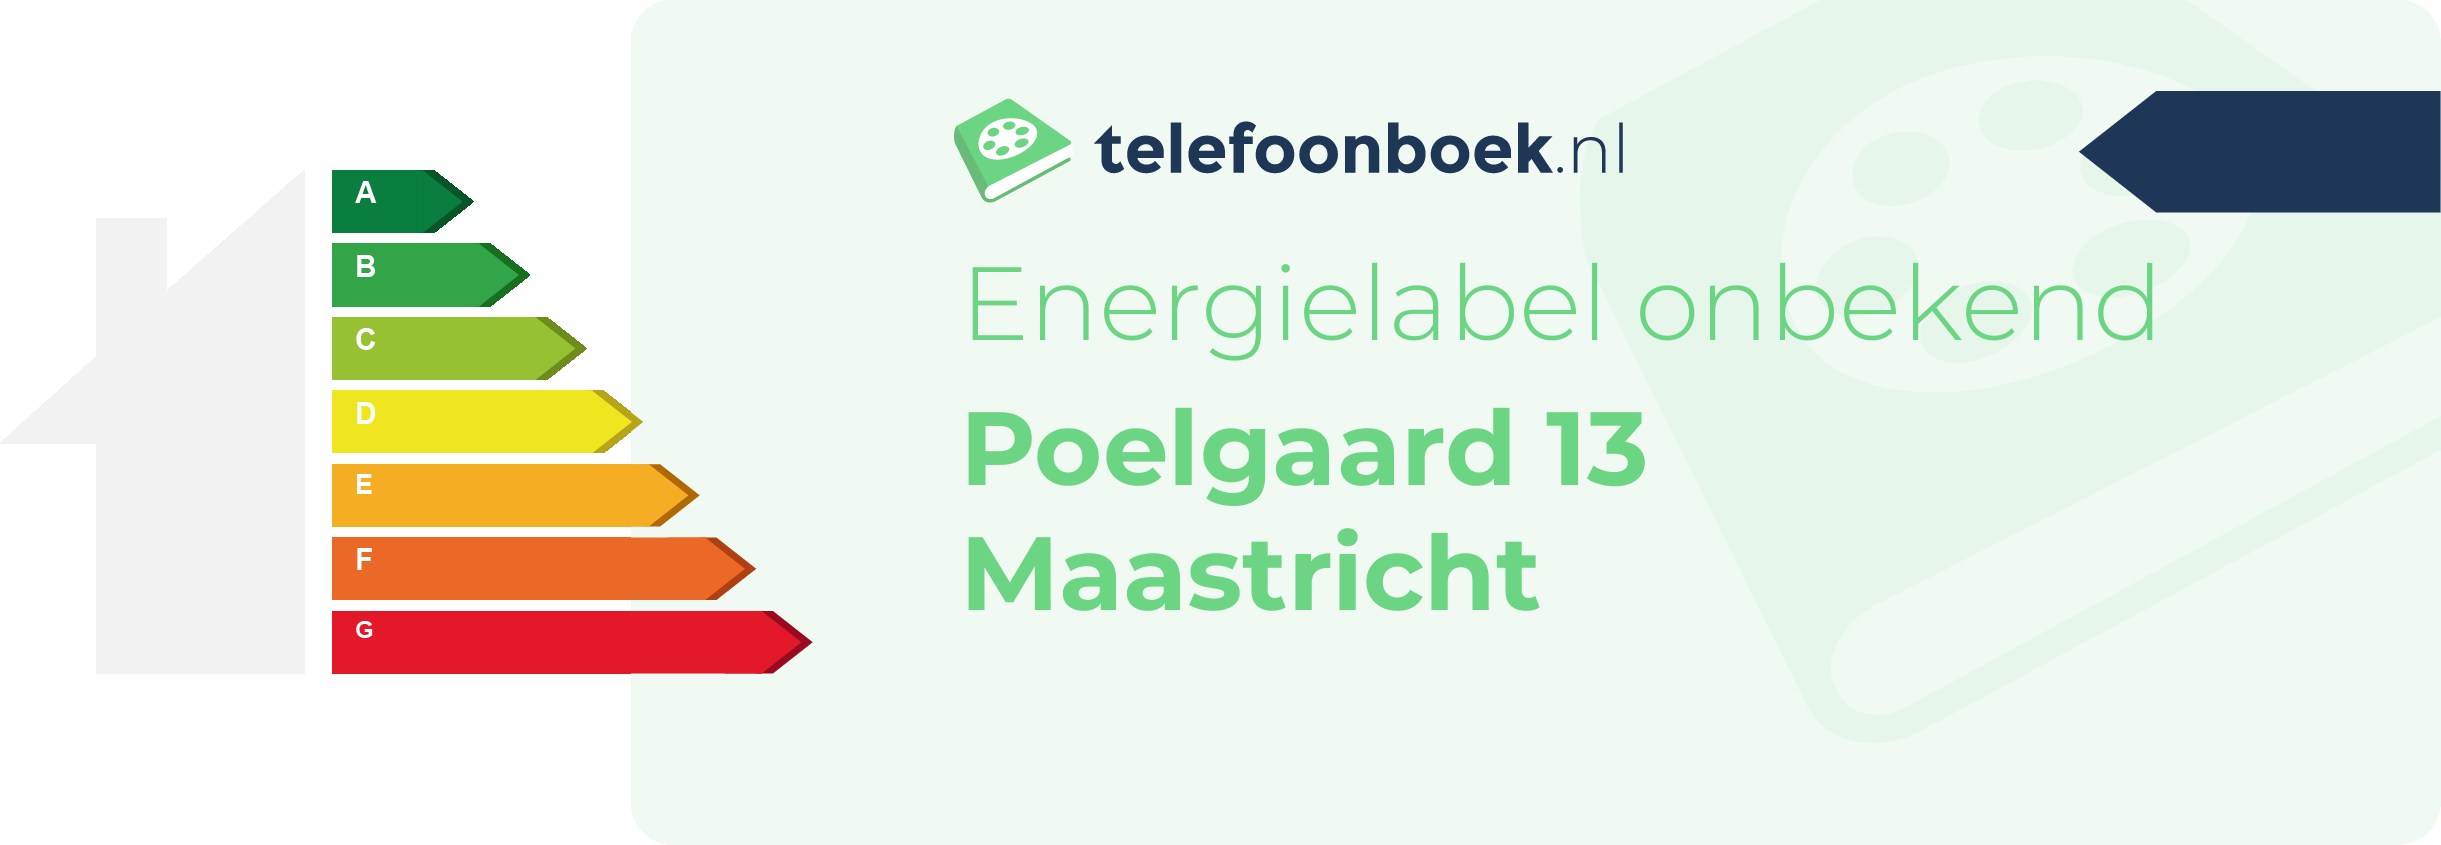 Energielabel Poelgaard 13 Maastricht